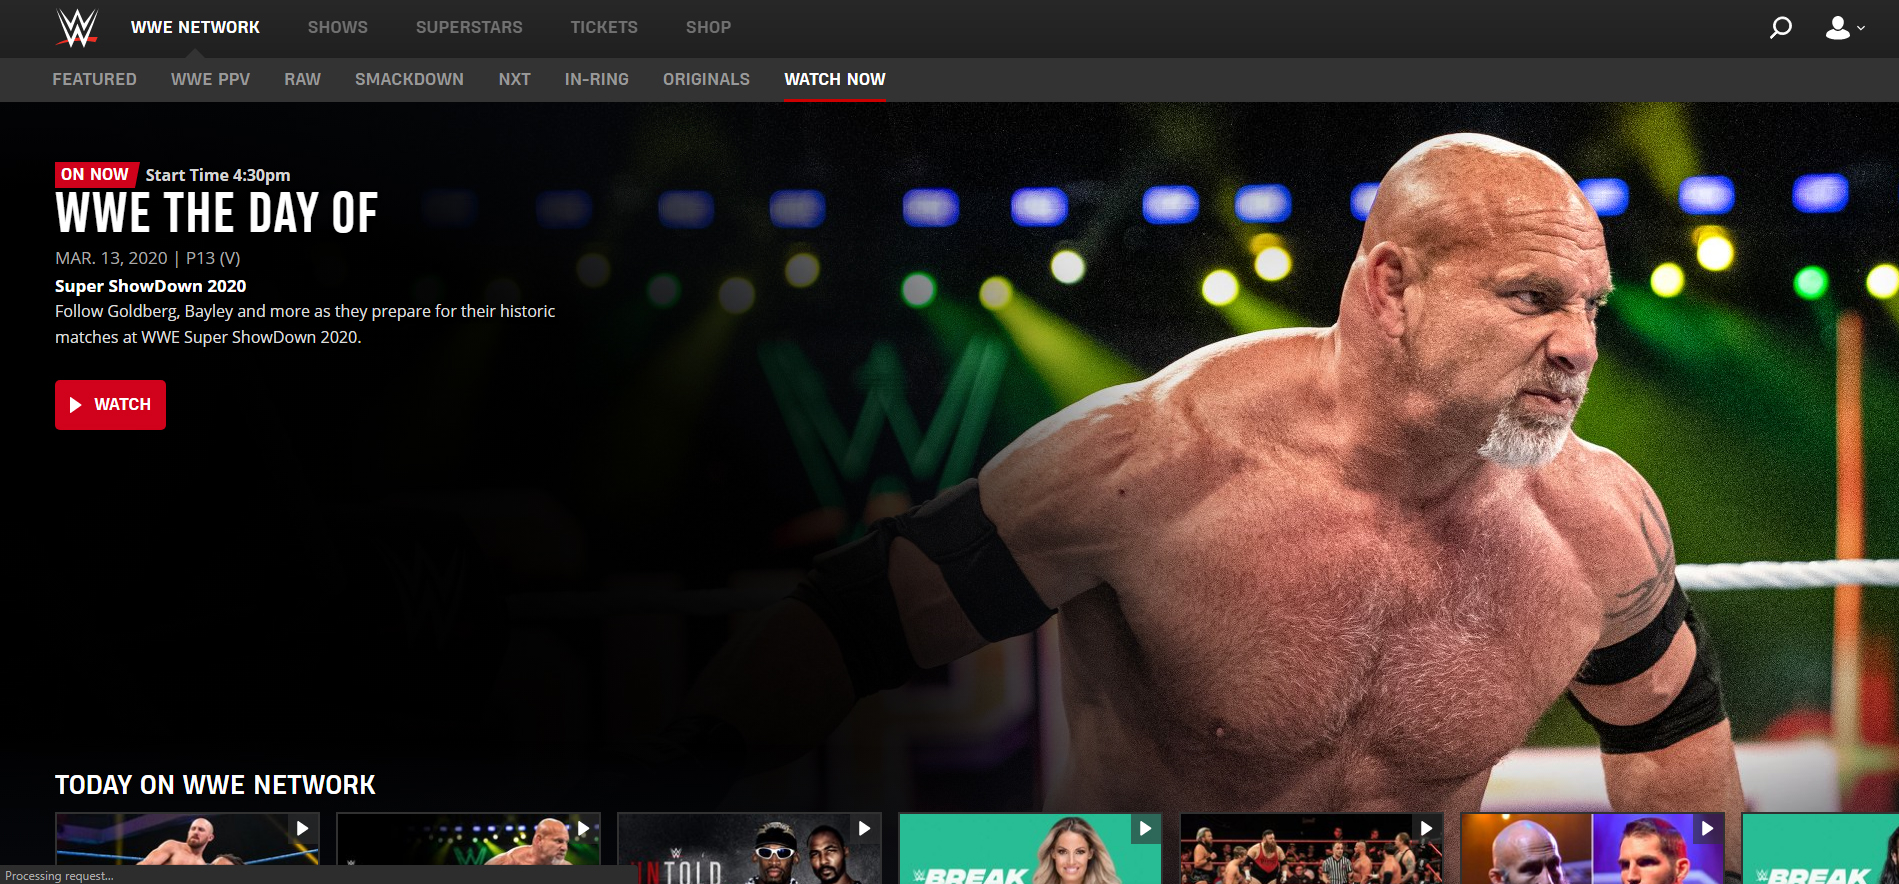 Wwe account free WWE Network